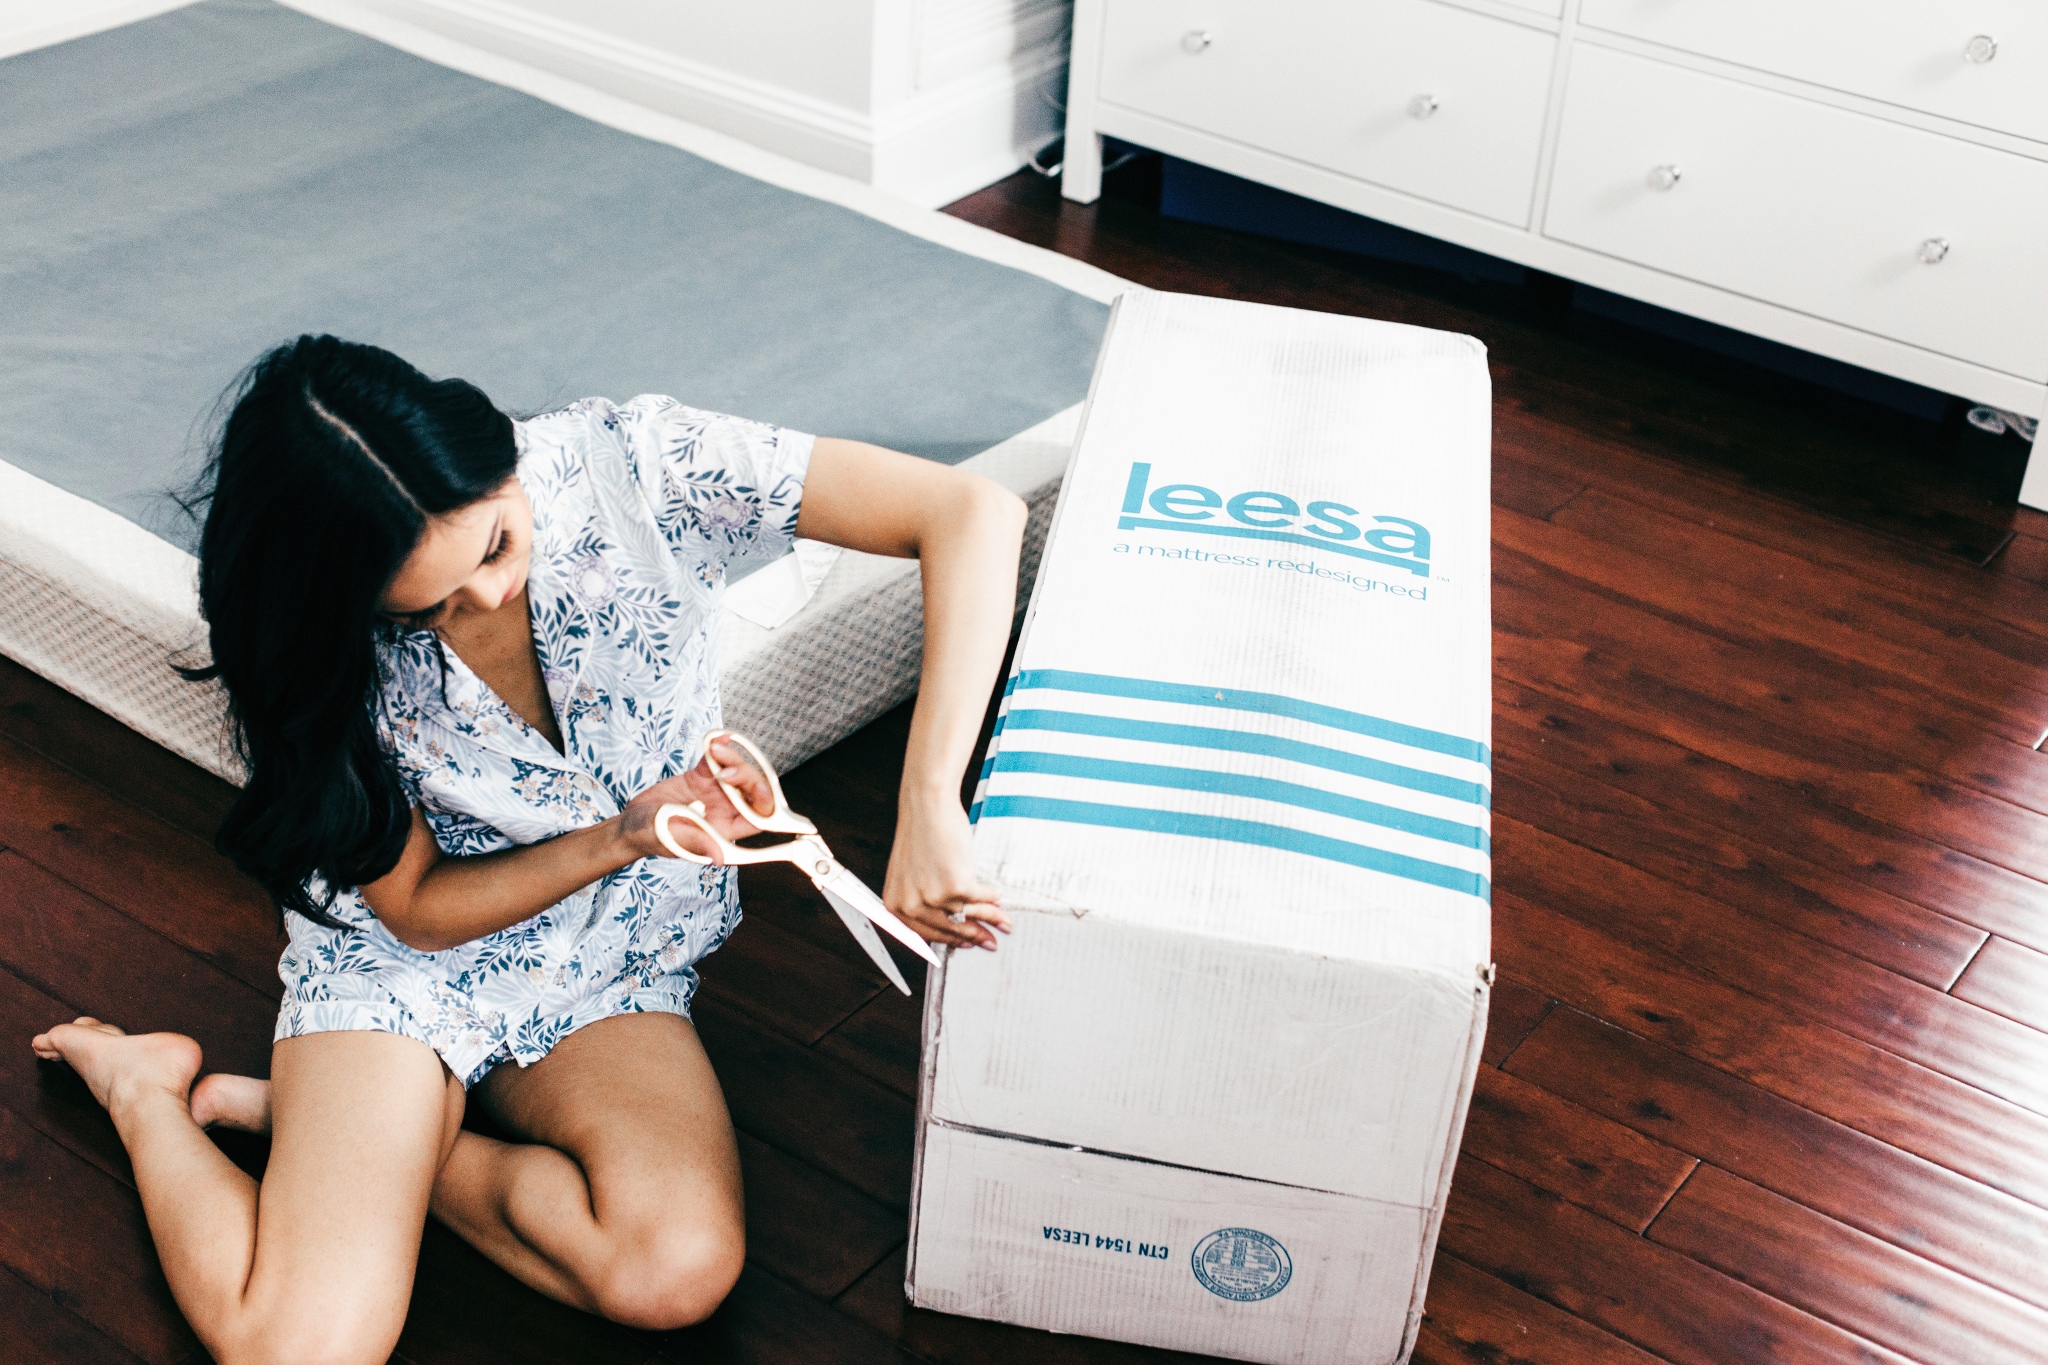 leesa mattress weight in box